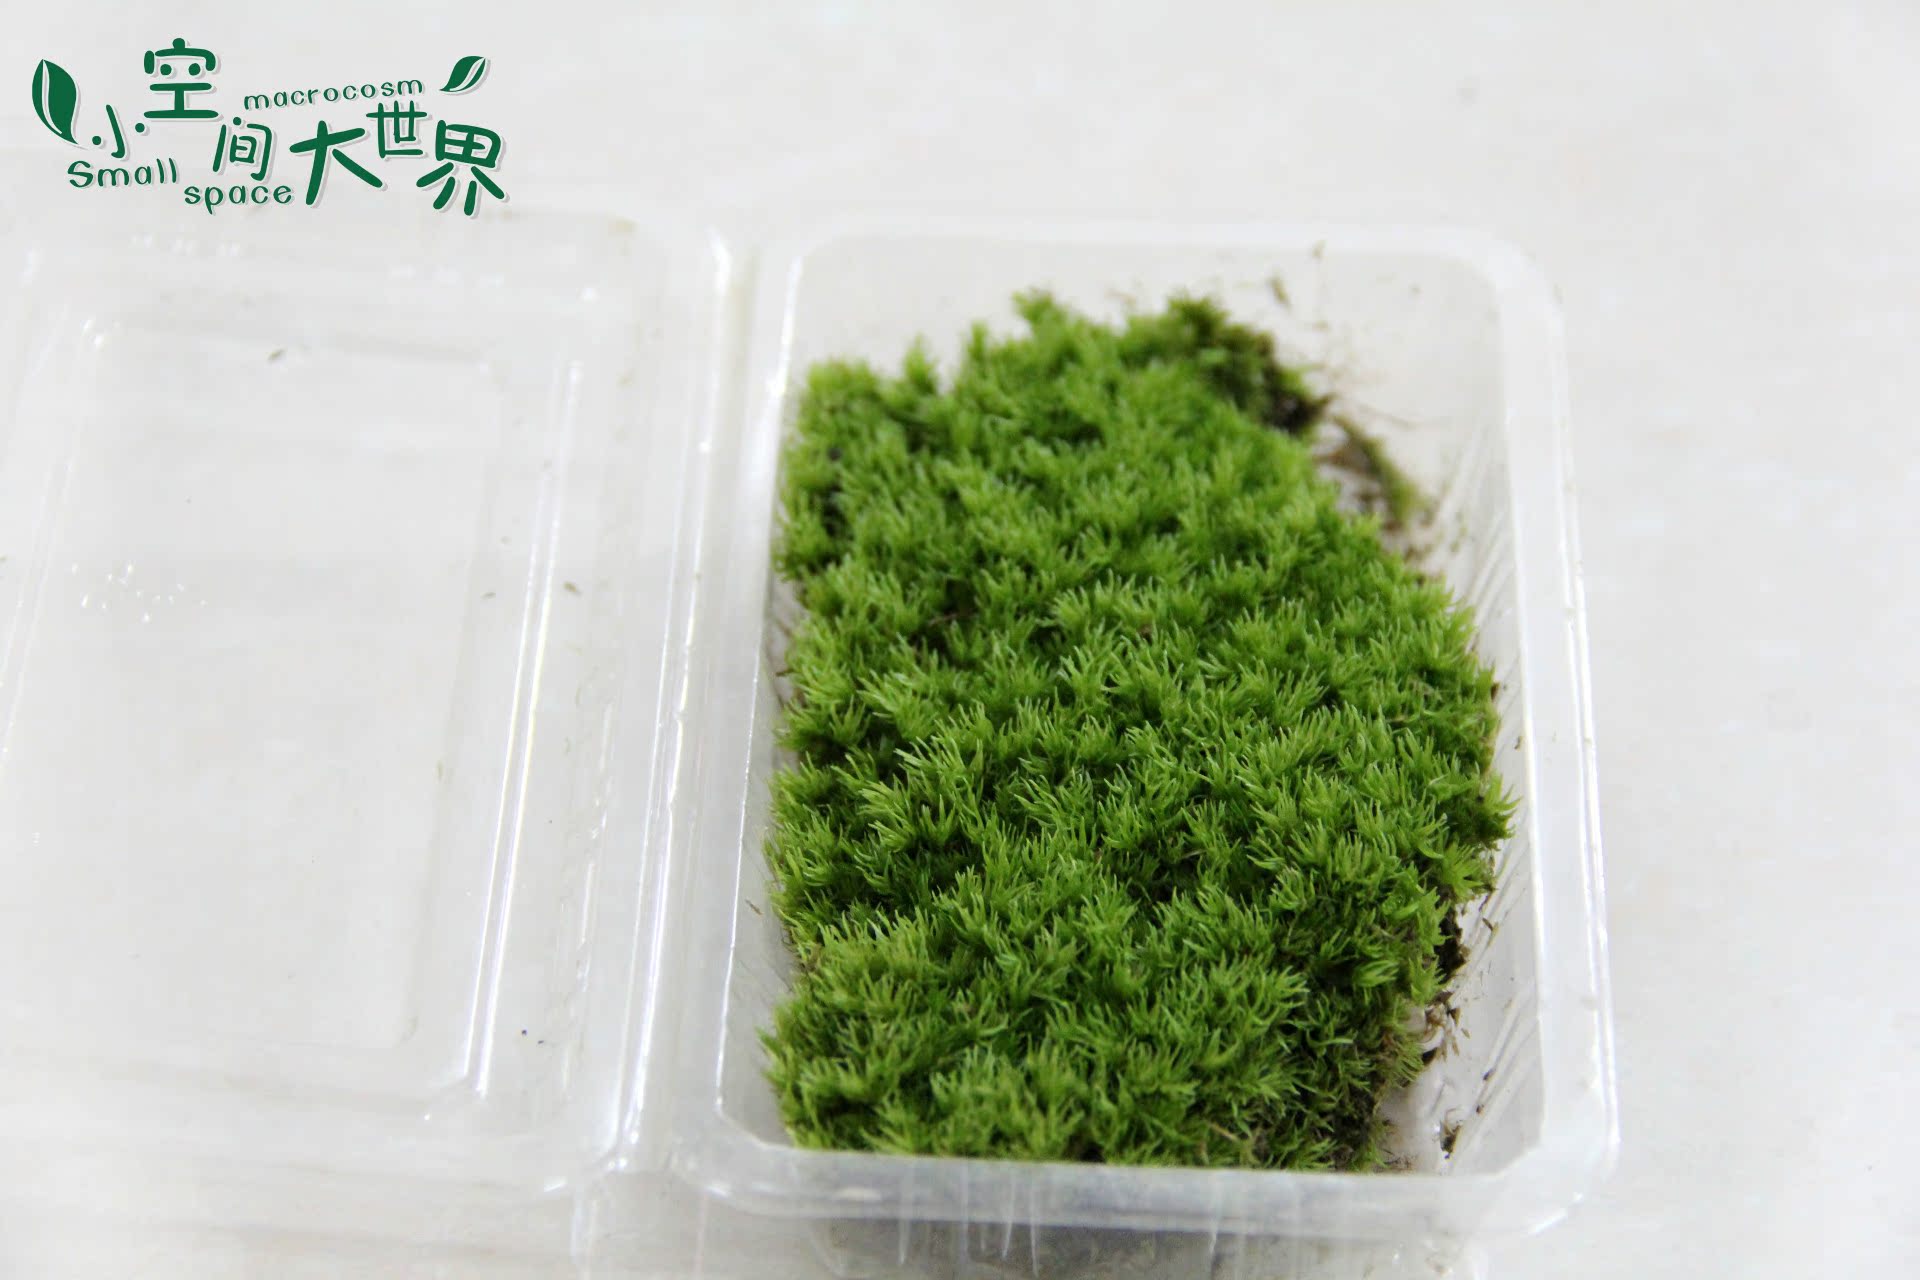 微景观生态瓶专用 微景观苔藓 小白发苔藓 白发藓 13*10cm 活苔藓